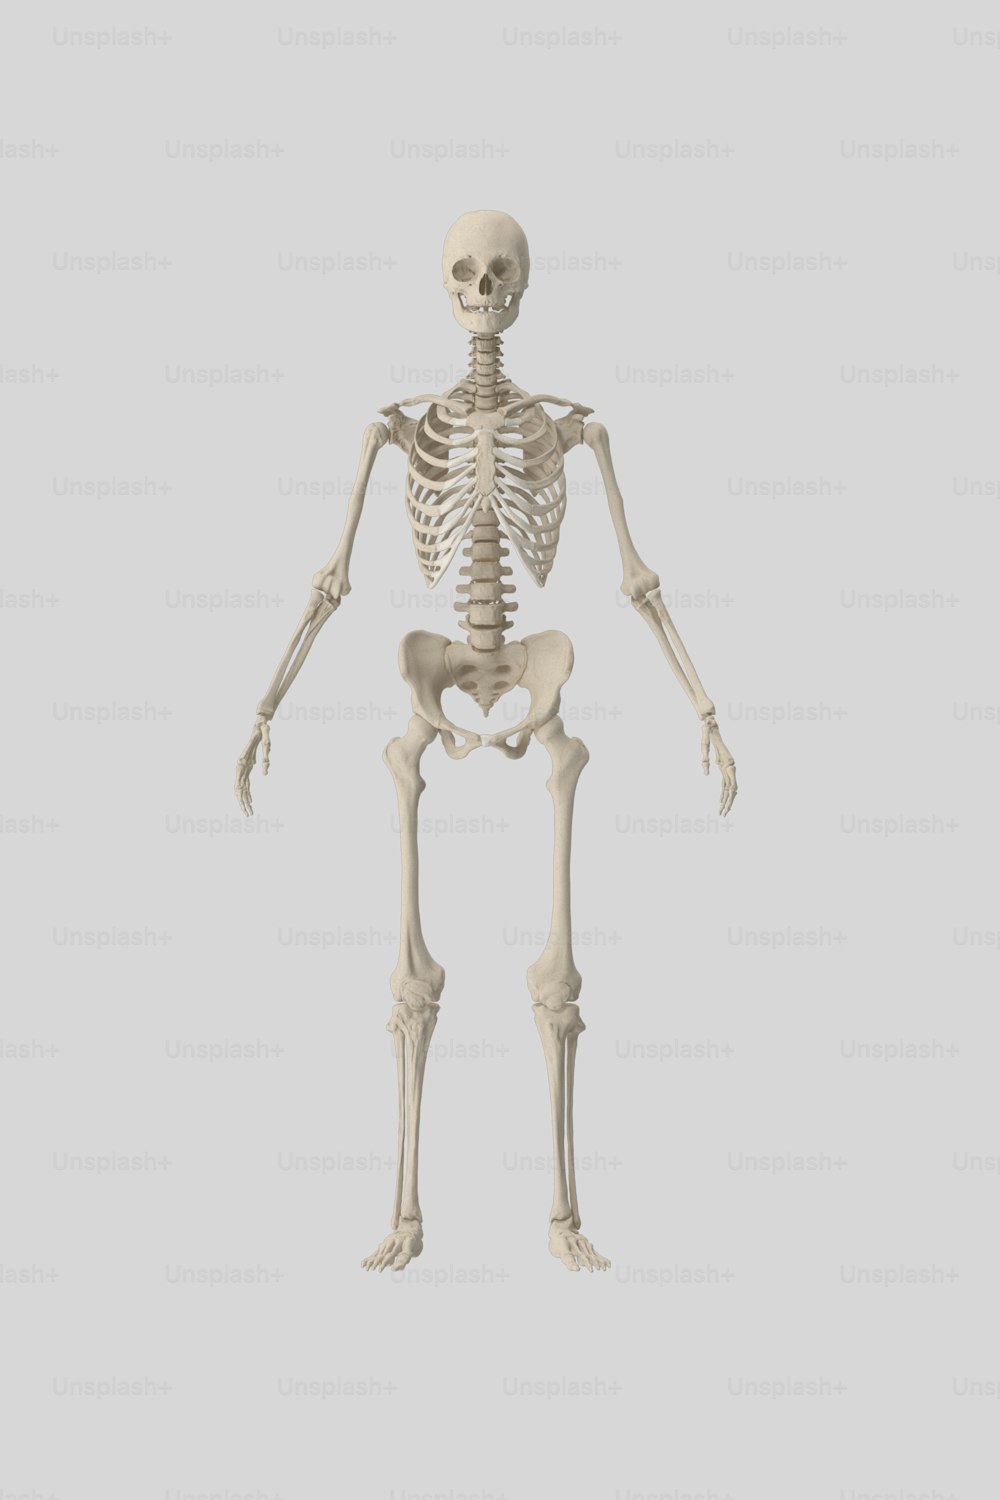 Uno scheletro umano è mostrato in questa immagine